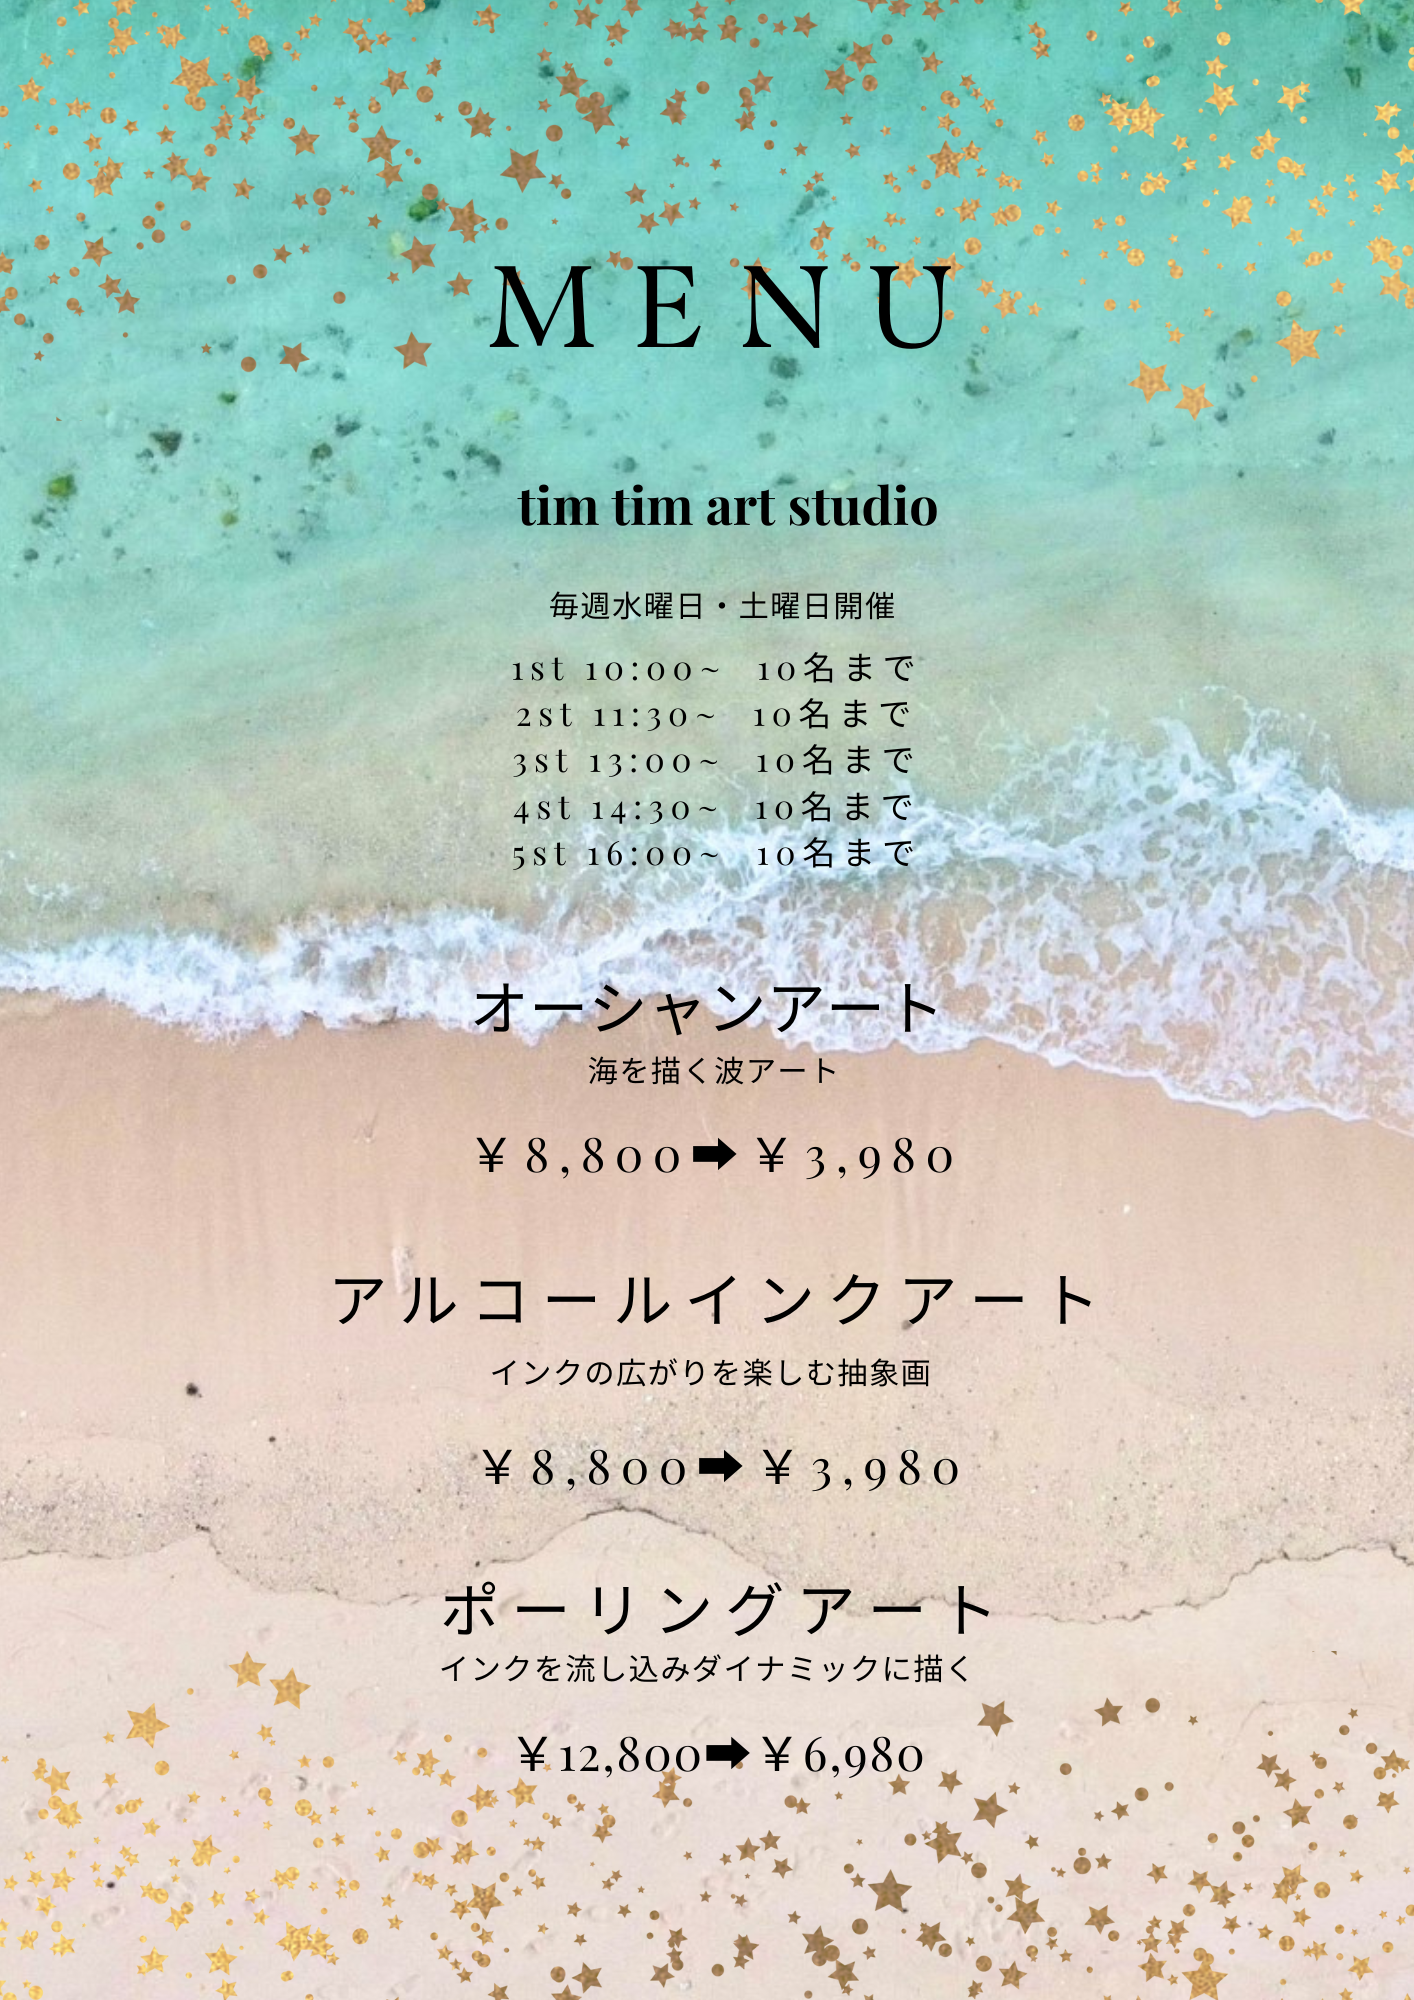 〜沖縄でアート体験〜オーシャンアート・アルコールインクアートのアート体験教室の写真1枚目